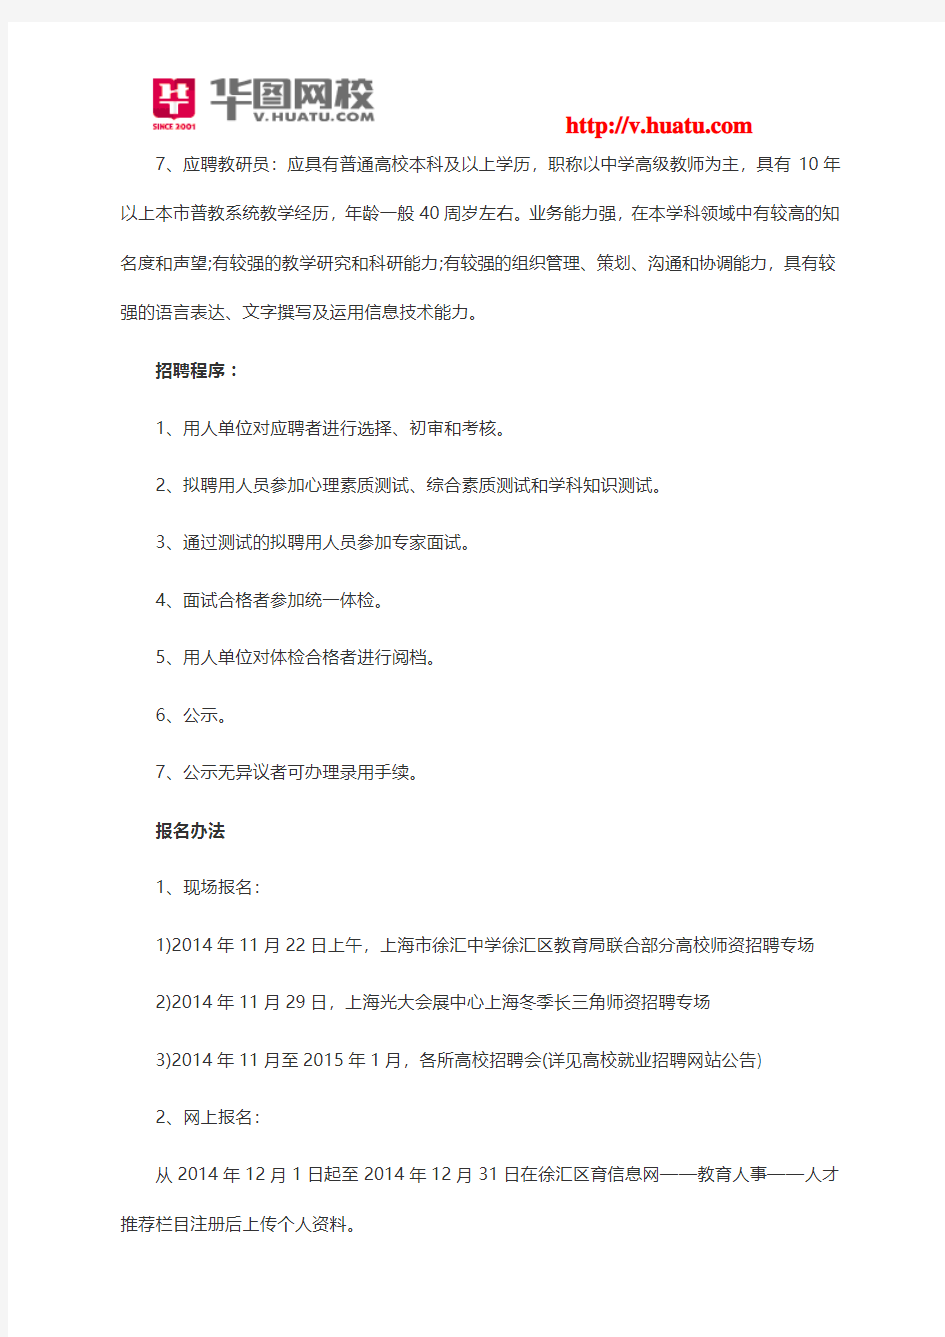 2014年上海徐汇区教育系统教师招聘公告